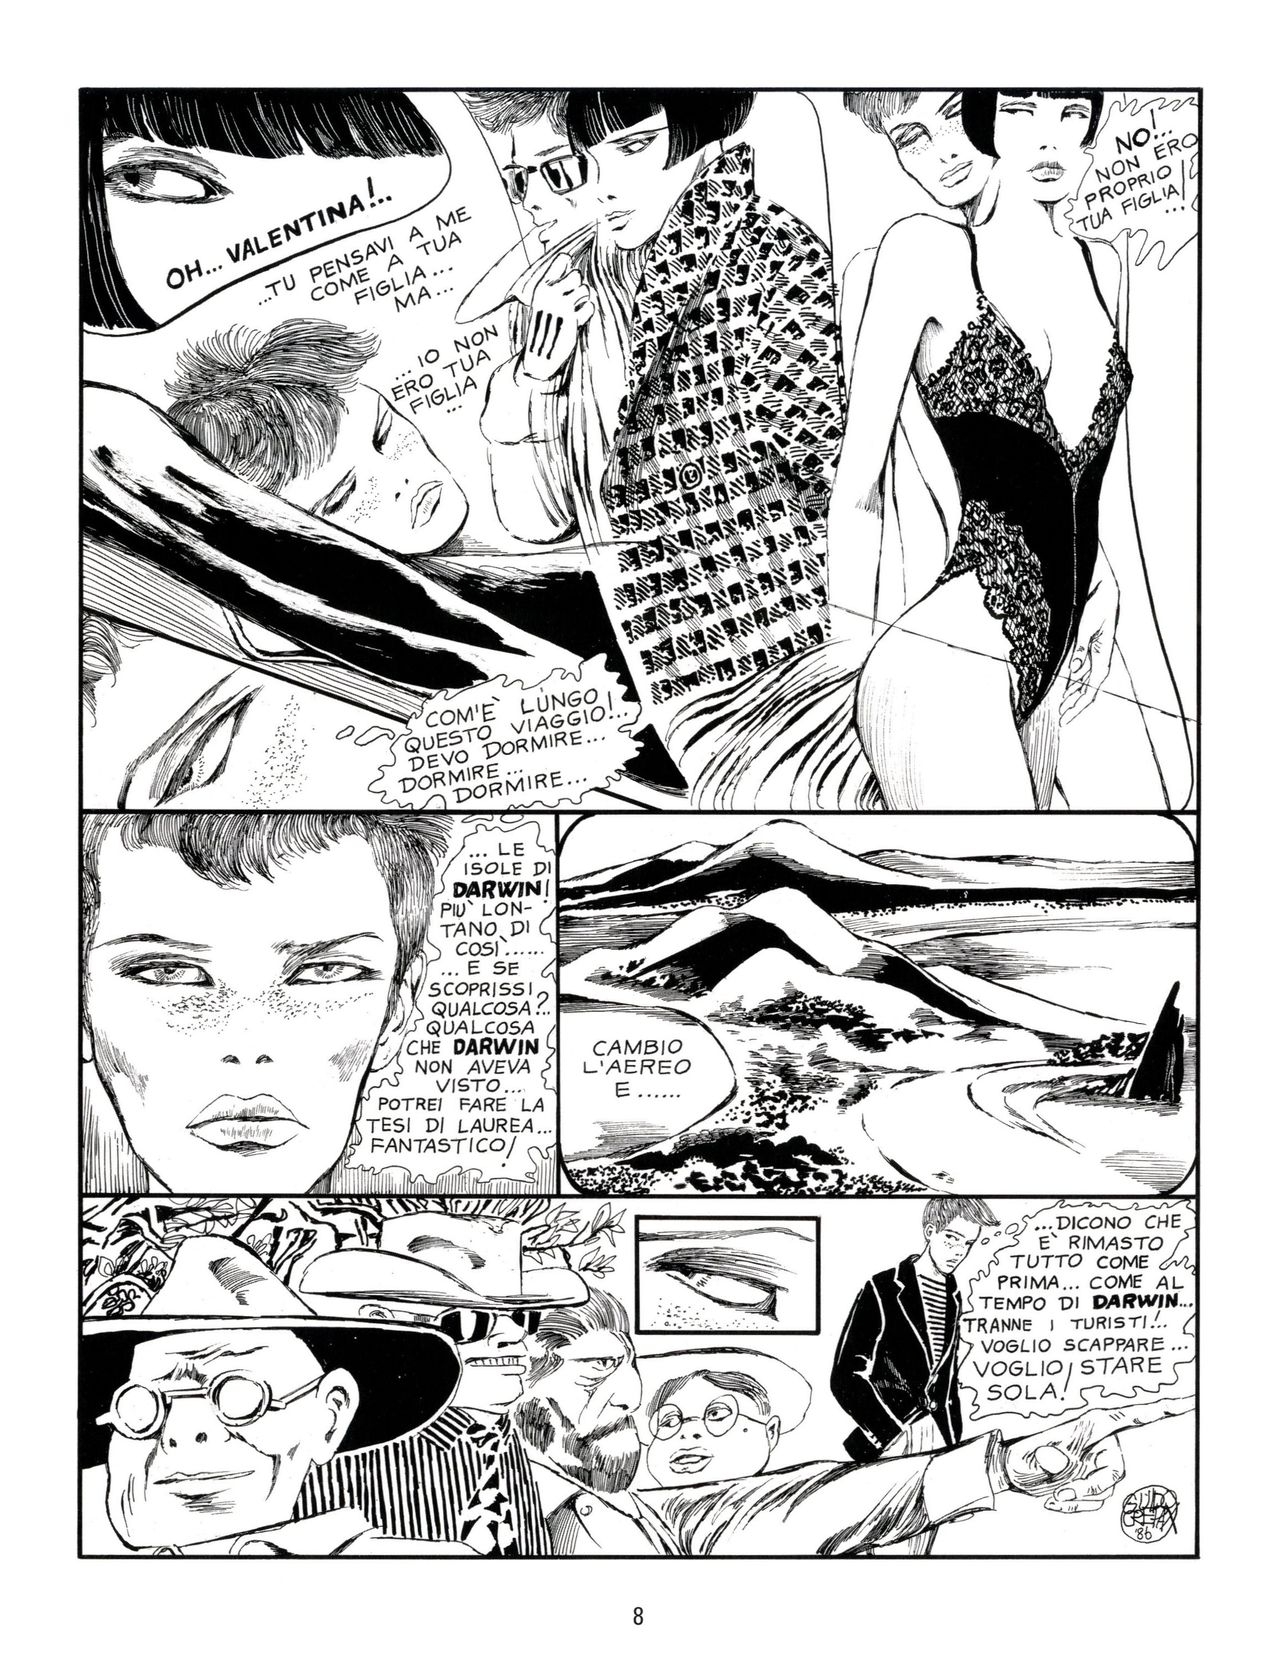 [Guido Crepax] Erotica Fumetti #29 : Arrivederci Valentina? : Verso una nuova vita [Italian] 11